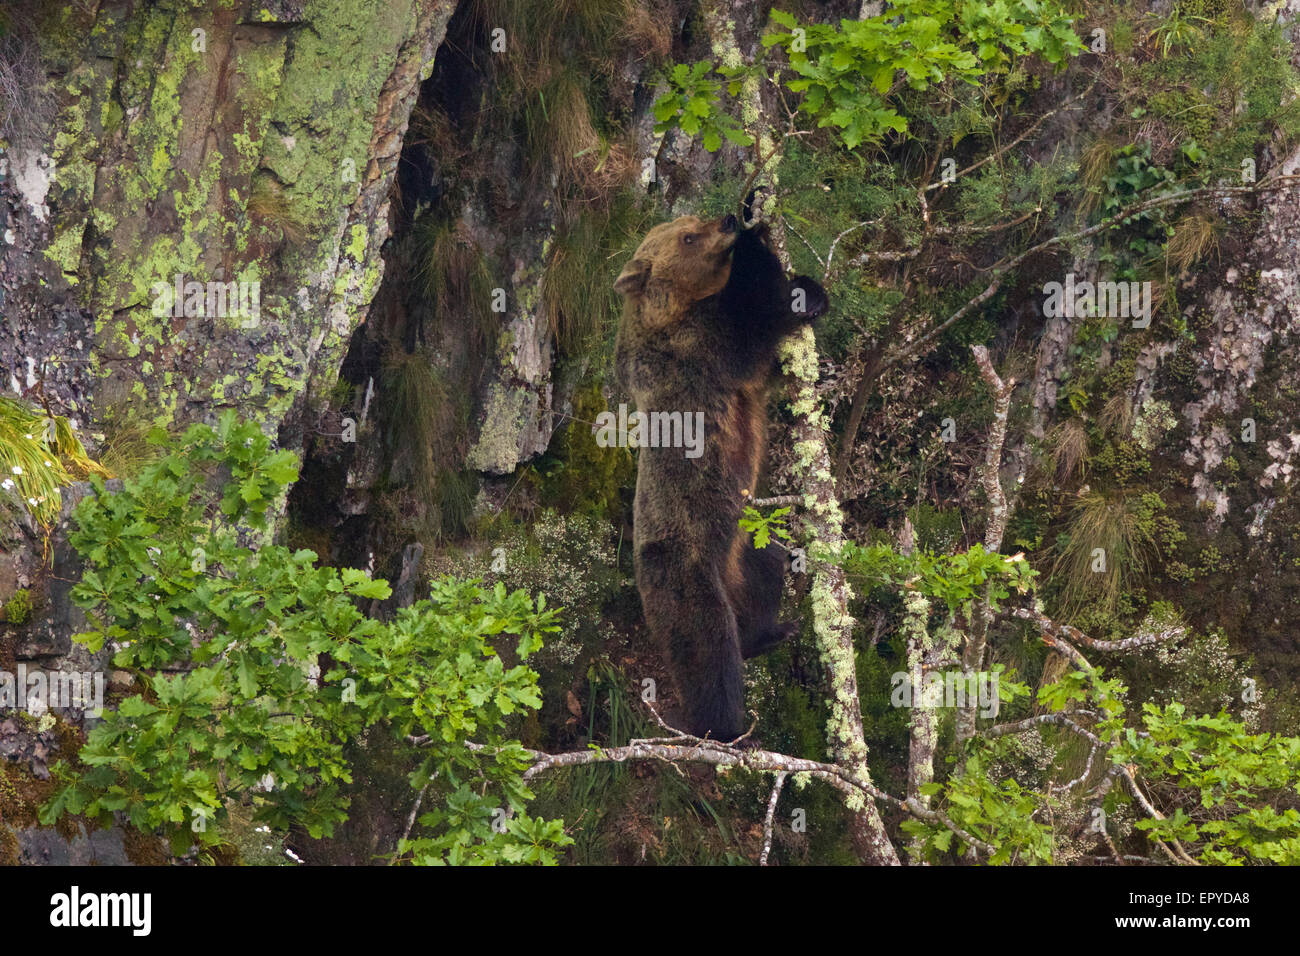 Un Ours brun (Ursus arctos) femme debout sur un chêne, la navigation sur les nouvelles feuilles. Montagnes de Cantabrie, Asturies, Espagne. Banque D'Images